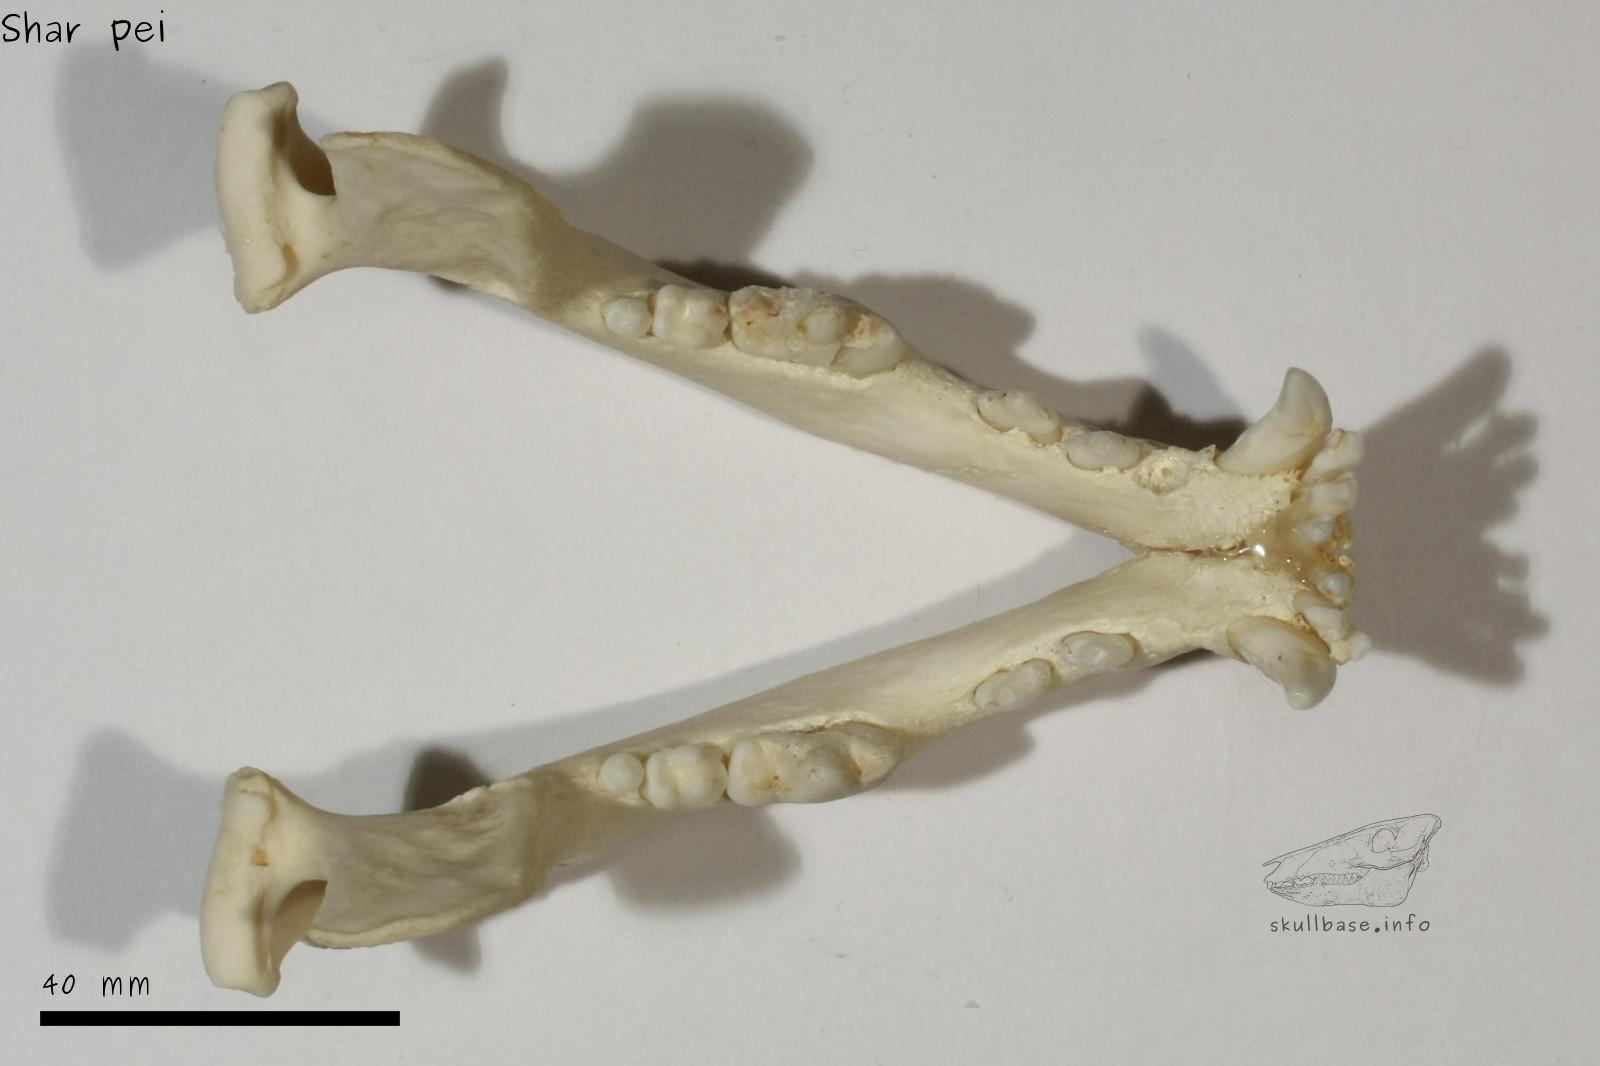 Shar pei (Canis lupus familiaris) jaw